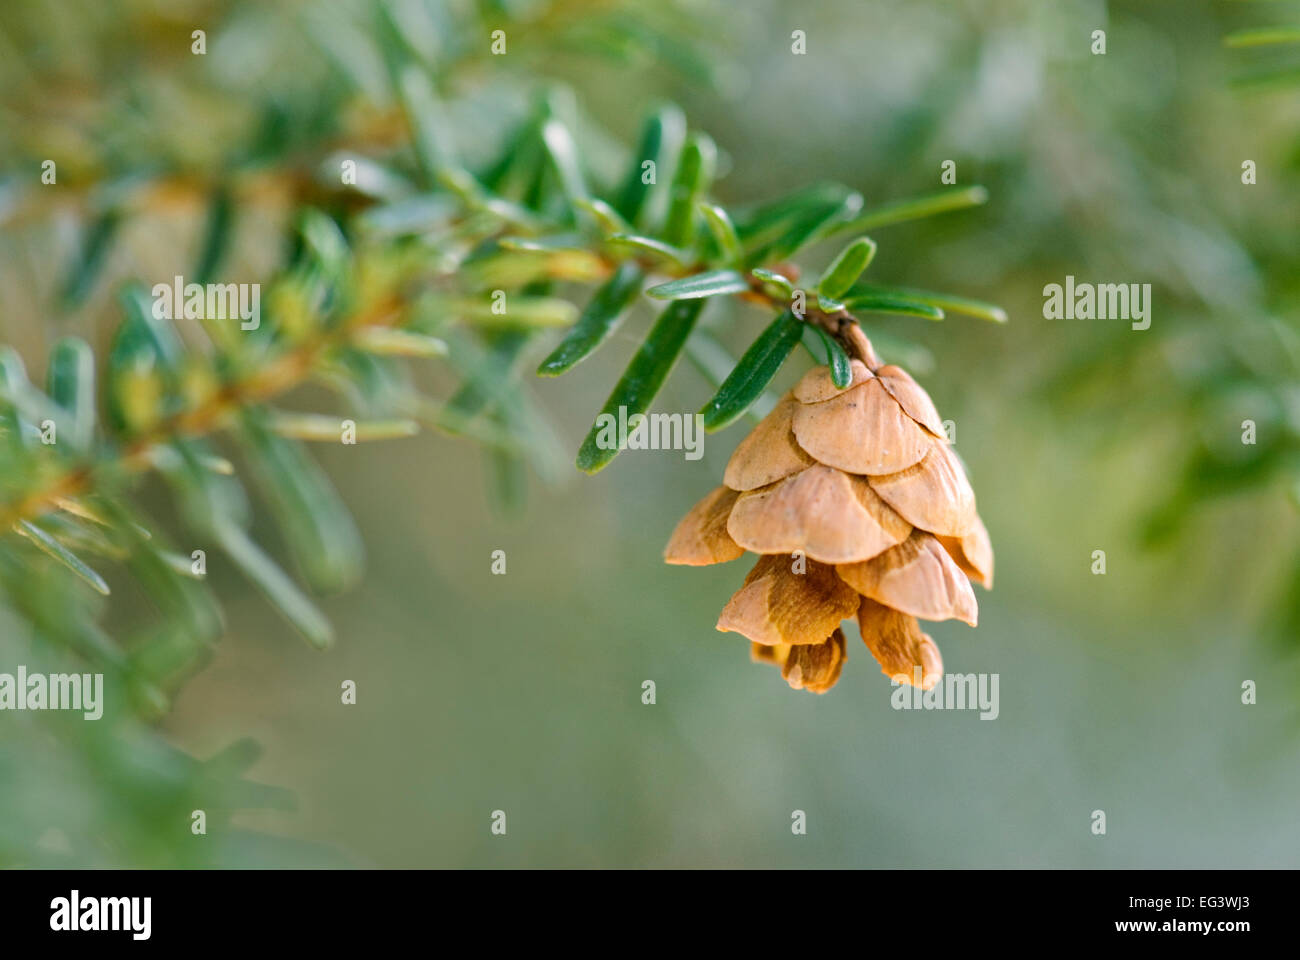 Pine Cone from Japanese Hemlock Tree - Tsuga sieboldii Stock Photo